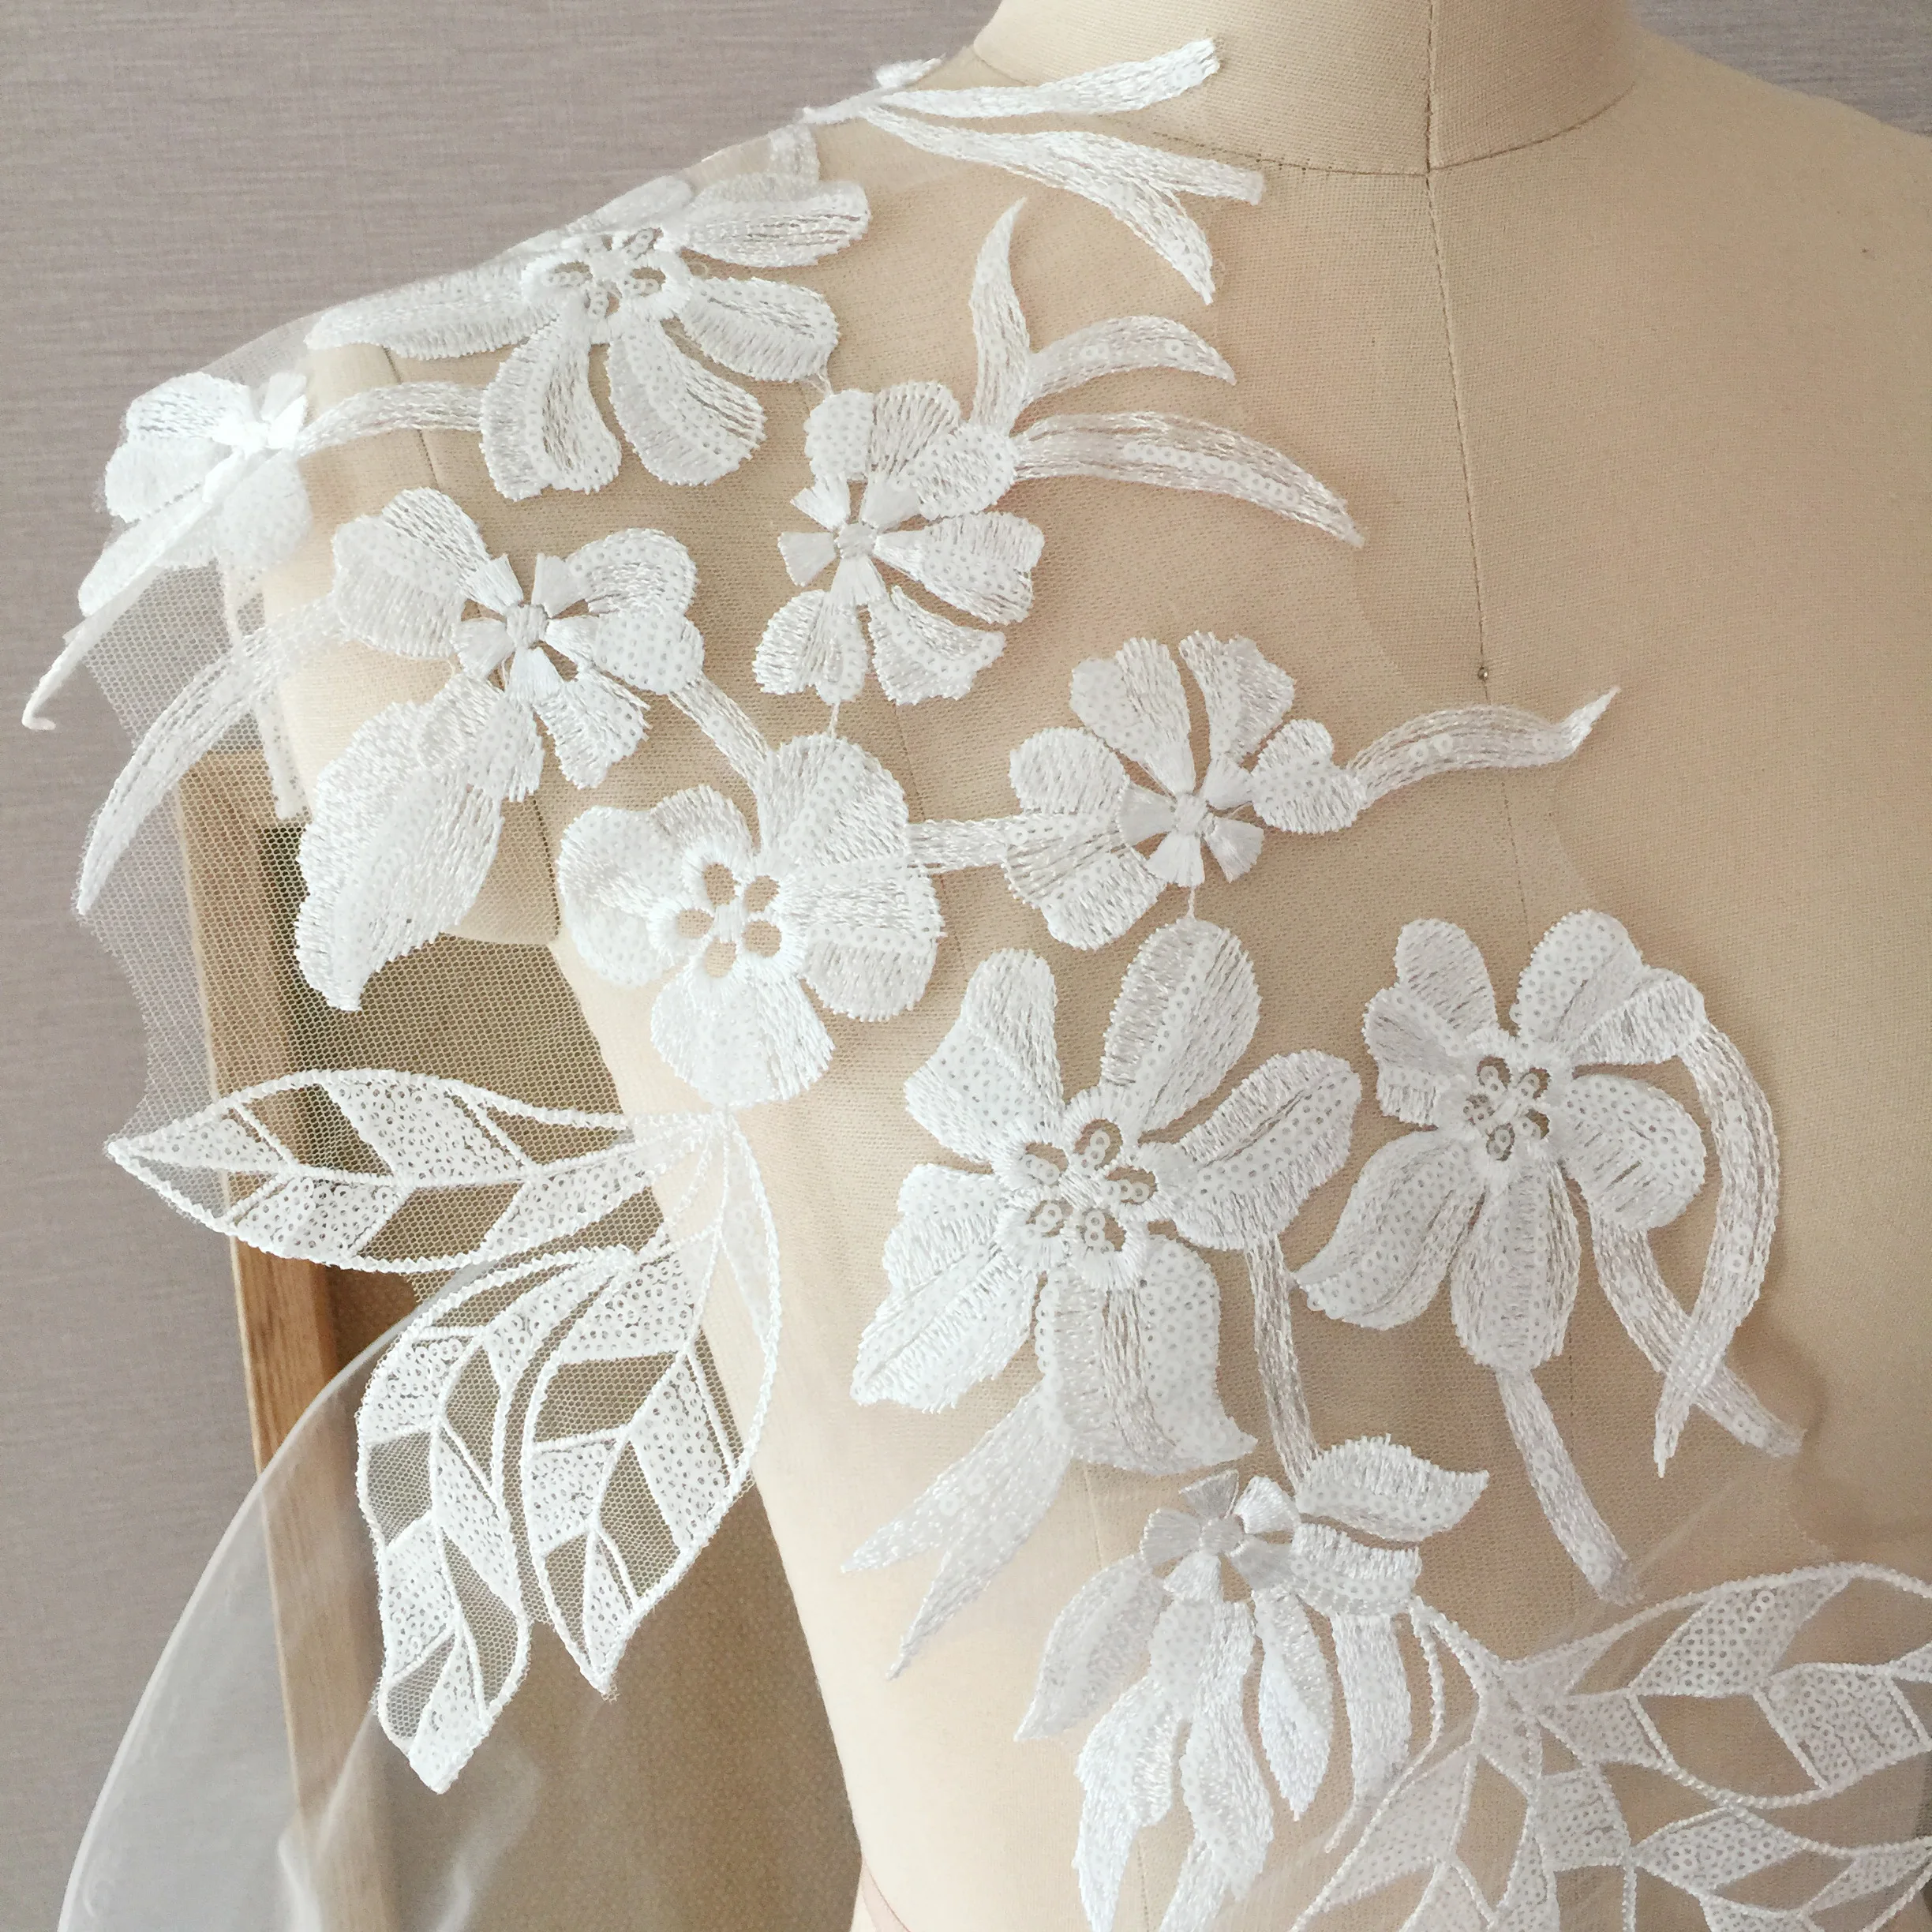 1 Pair 2 pieces Large Ivory Sequin Lace Applique, Leaf Bridal Veil Wedding  Floral Embroidery Lace Patch Motif